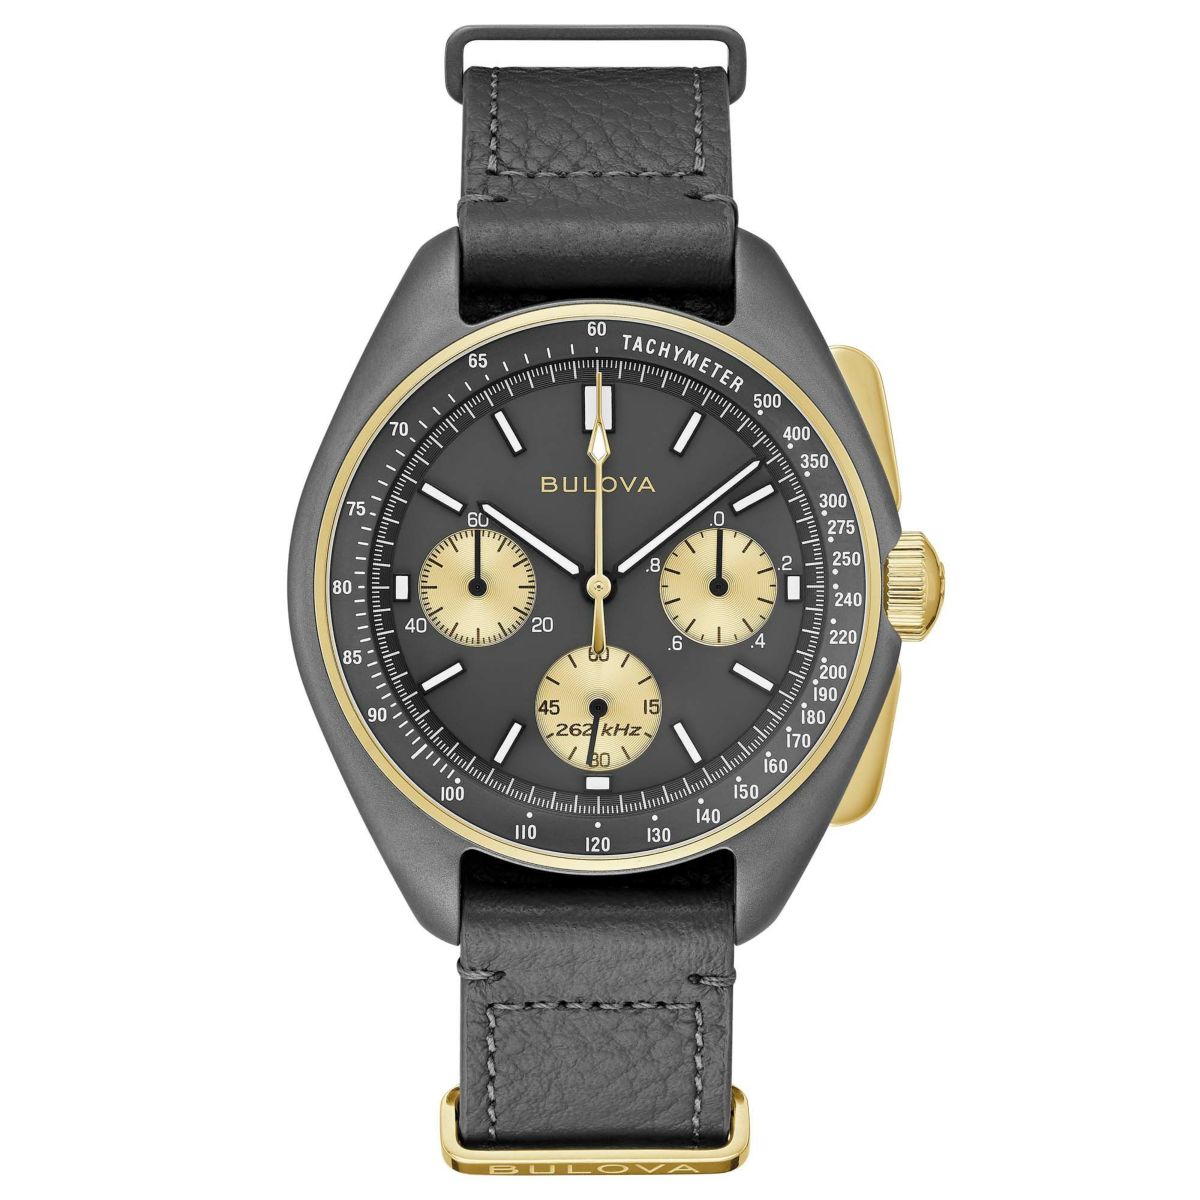 ブローバ ミリタリー A-15 リミテッド エデイション - 腕時計(アナログ)